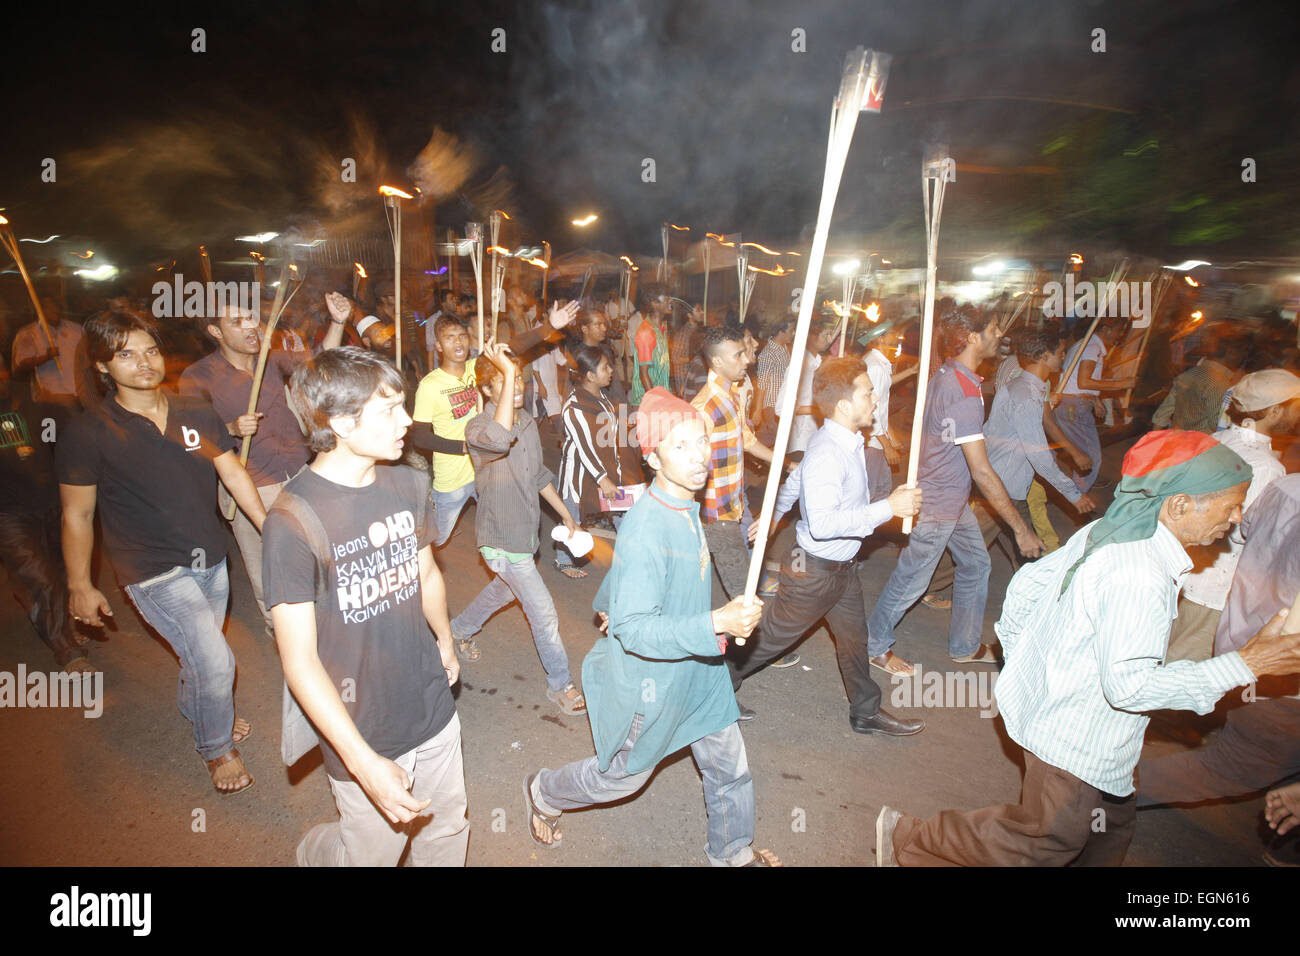 Dhaka, Bangladesh. Feb 27, 2015. Les activistes sociaux bangladais crier des slogans comme ils participent à une manifestation tenue torche pour protester contre l'assassinat de Avijit Roy, à Dhaka, Bangladesh, le vendredi, F eb. 27, 2015. Armé d'un couteau une foule a frappé à mort un blogger bangladais dont les écrits sur la religion a apporté des islamistes radicaux des menaces. Avijit Roy, d'athée qui prône la laïcité, a été attaqué à Paris alors qu'il marchait d'une foire du livre avec sa femme, qui a été blessé dans l'attaque. Personne n'a été arrêté mais les policiers disent qu'ils étudient un groupe islamiste local que l'éloge de la k Banque D'Images